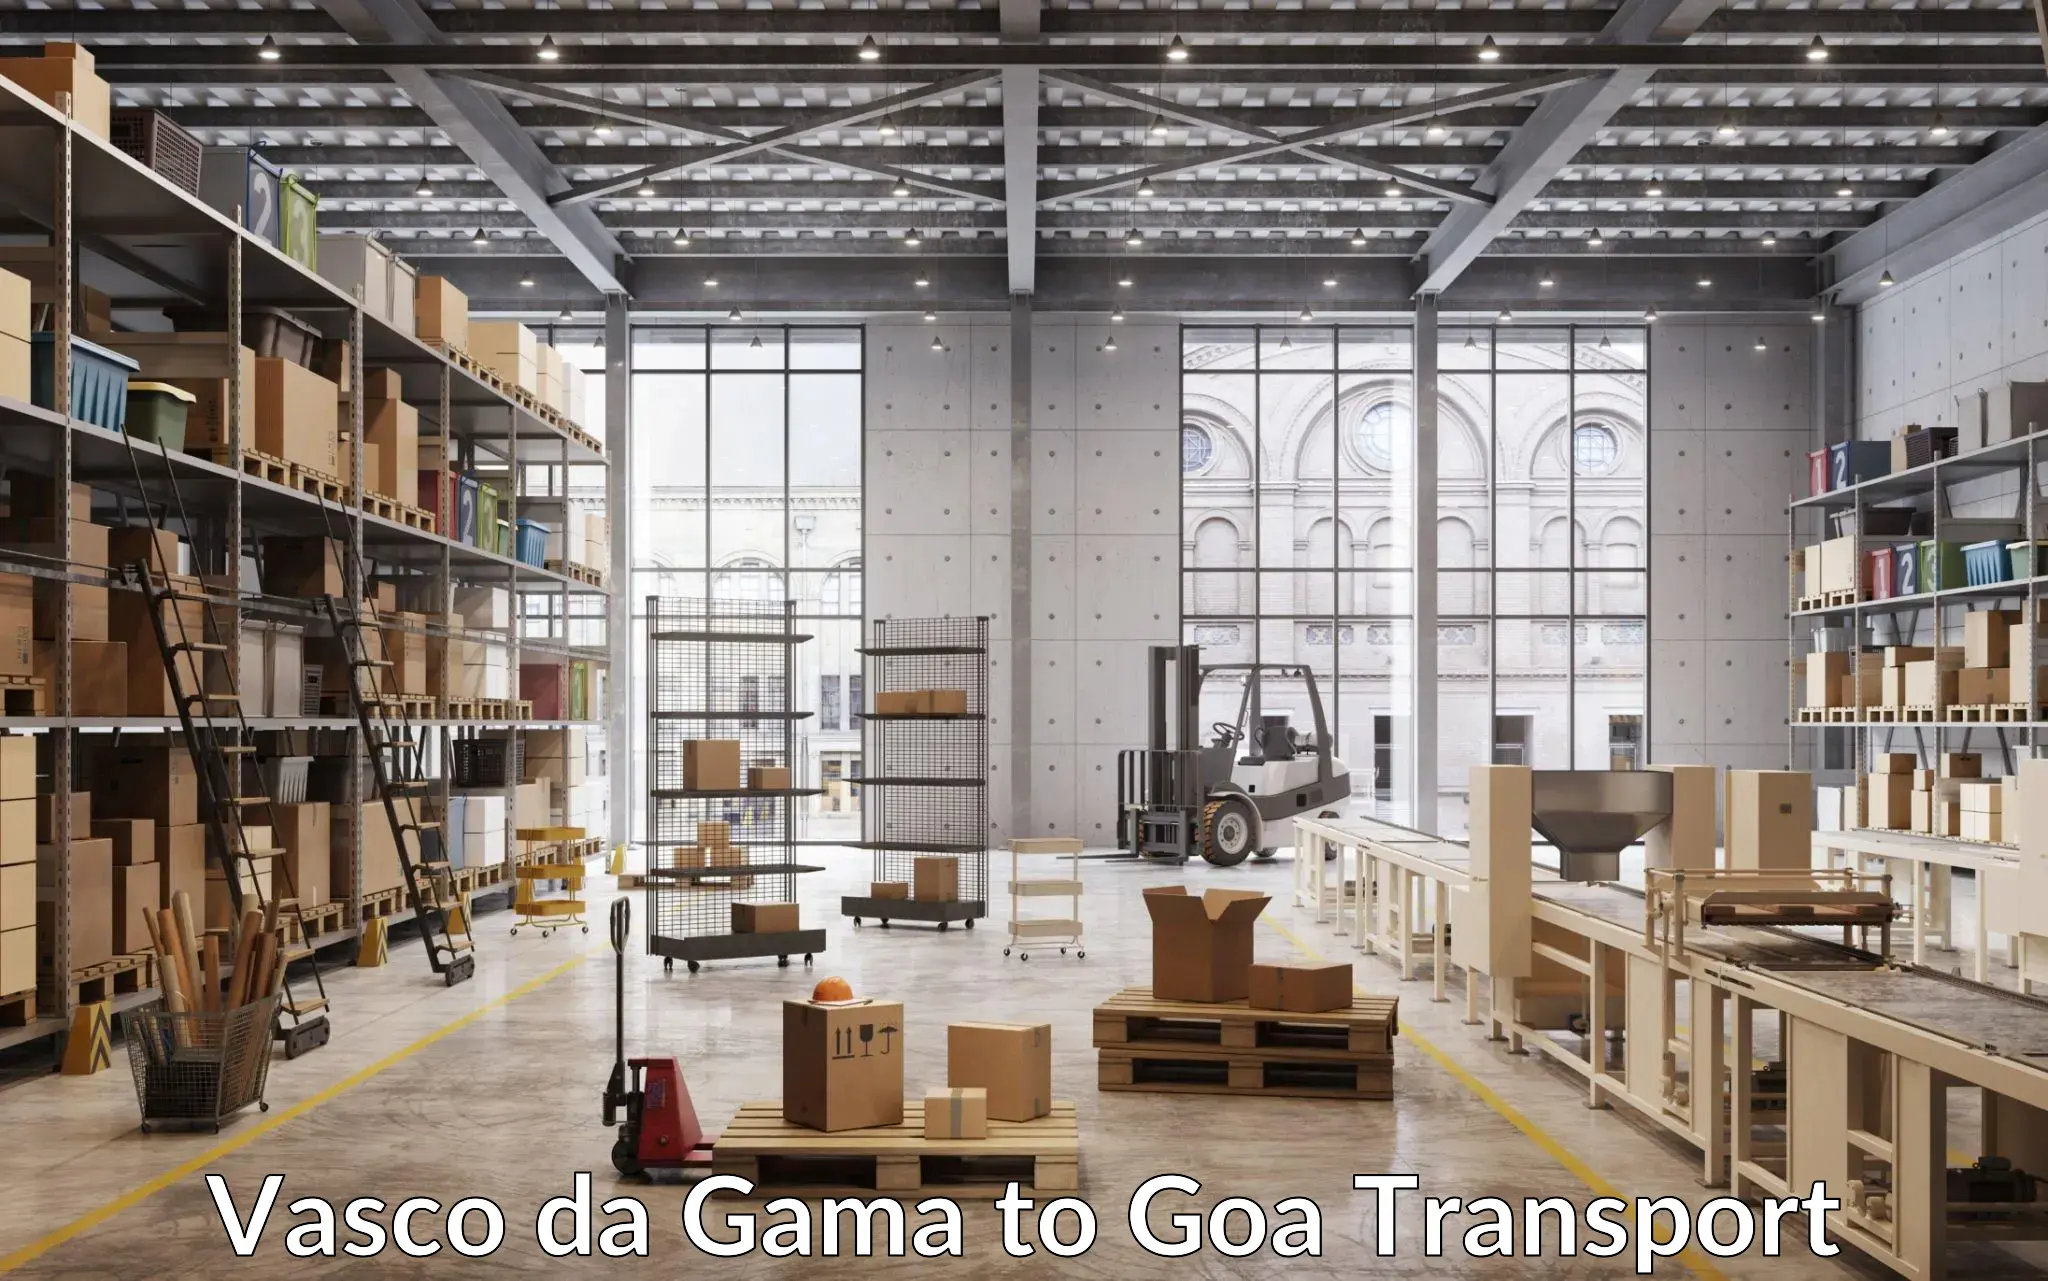 Express transport services Vasco da Gama to South Goa